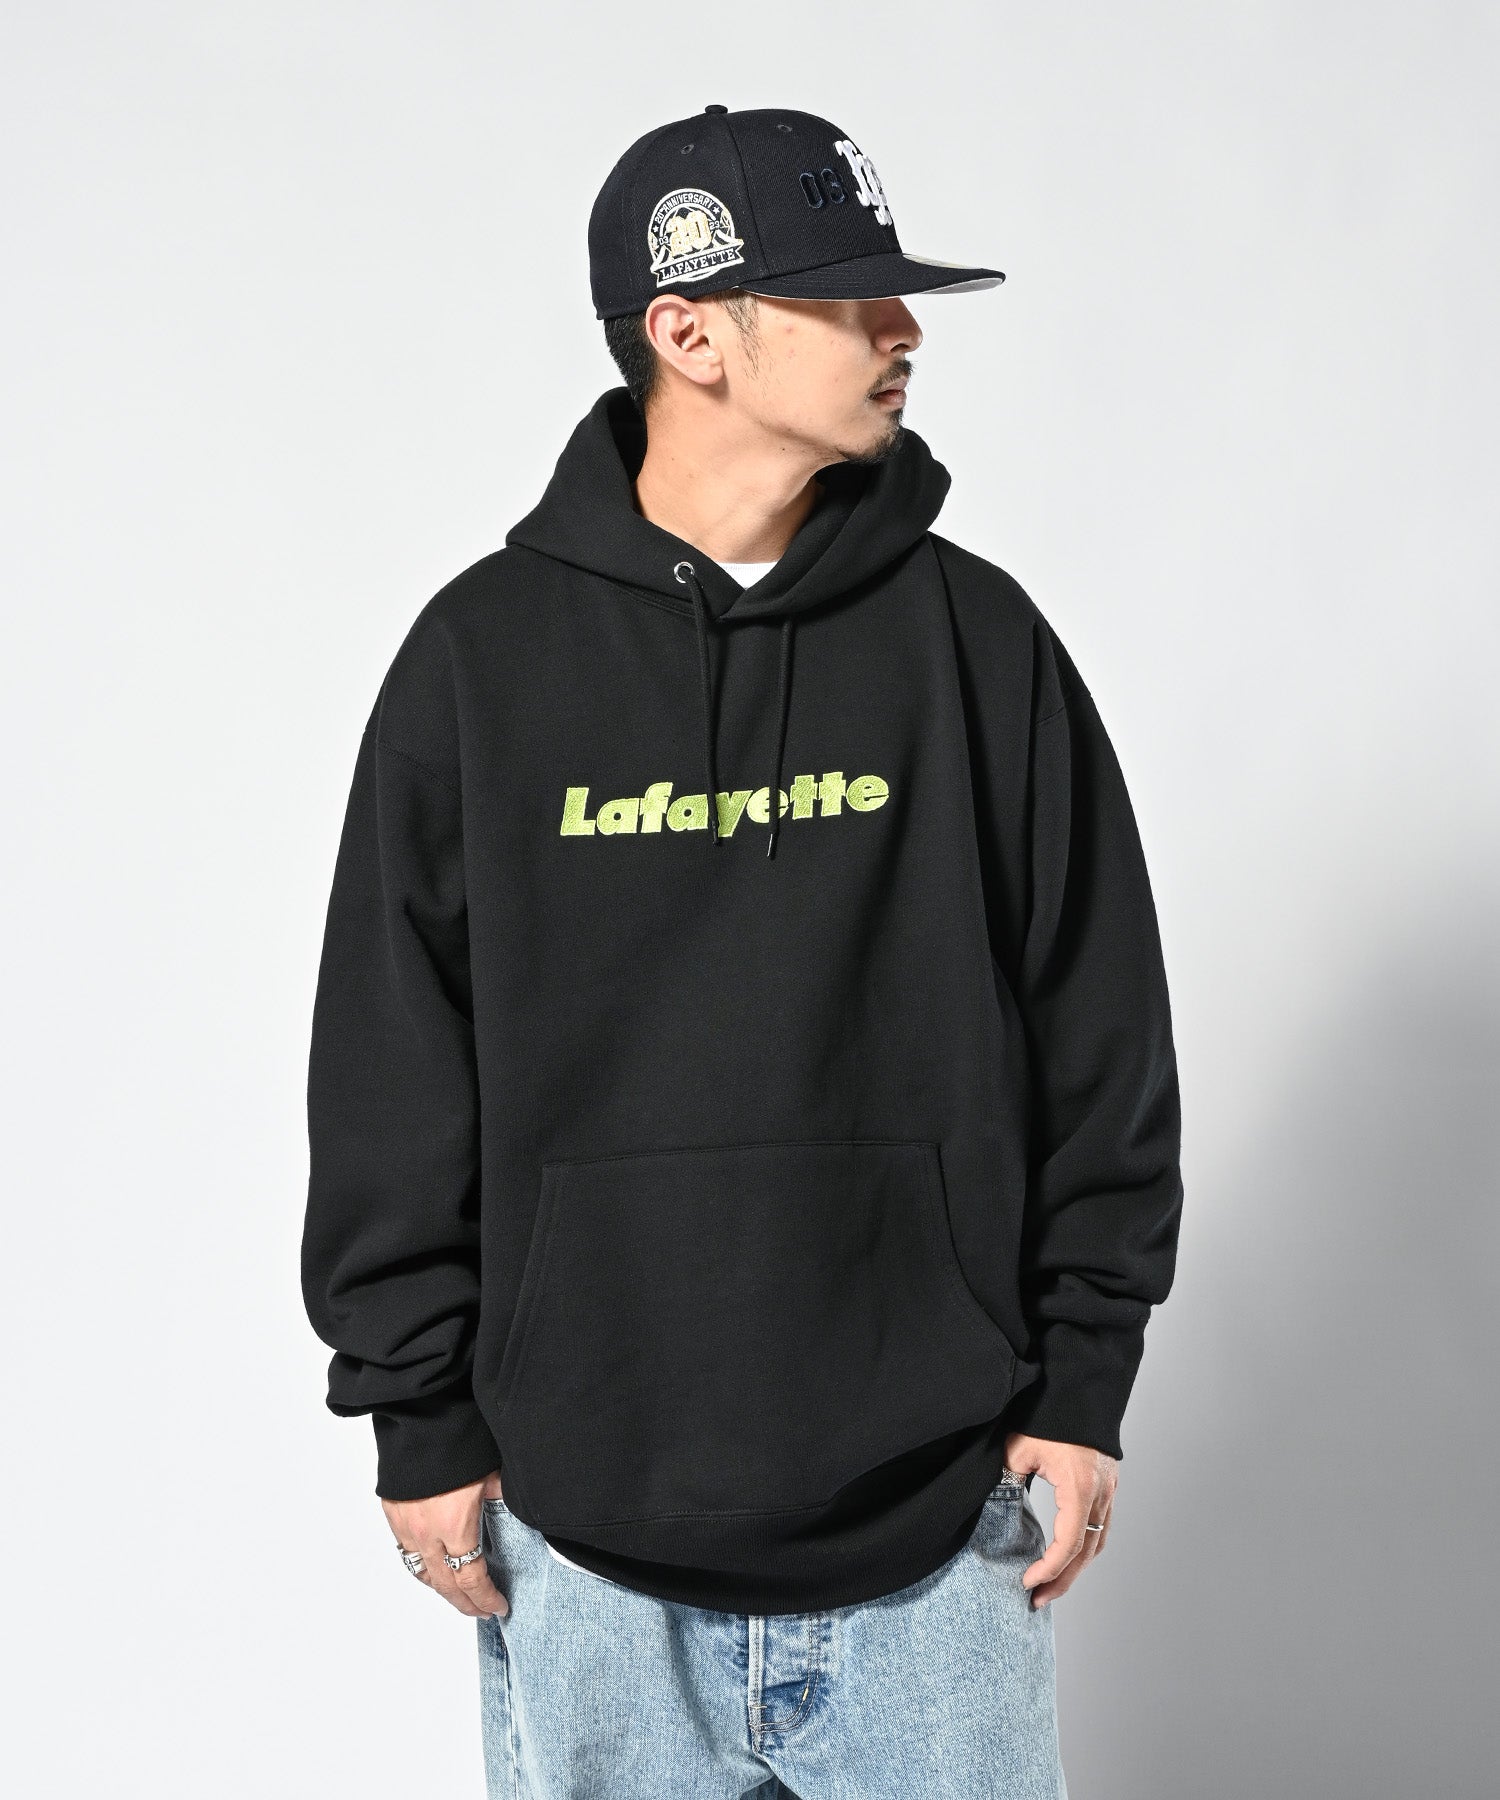 LFYT for Side-A (秋田) Lafayette CORE LOGO 重量級連帽衫 LE230504